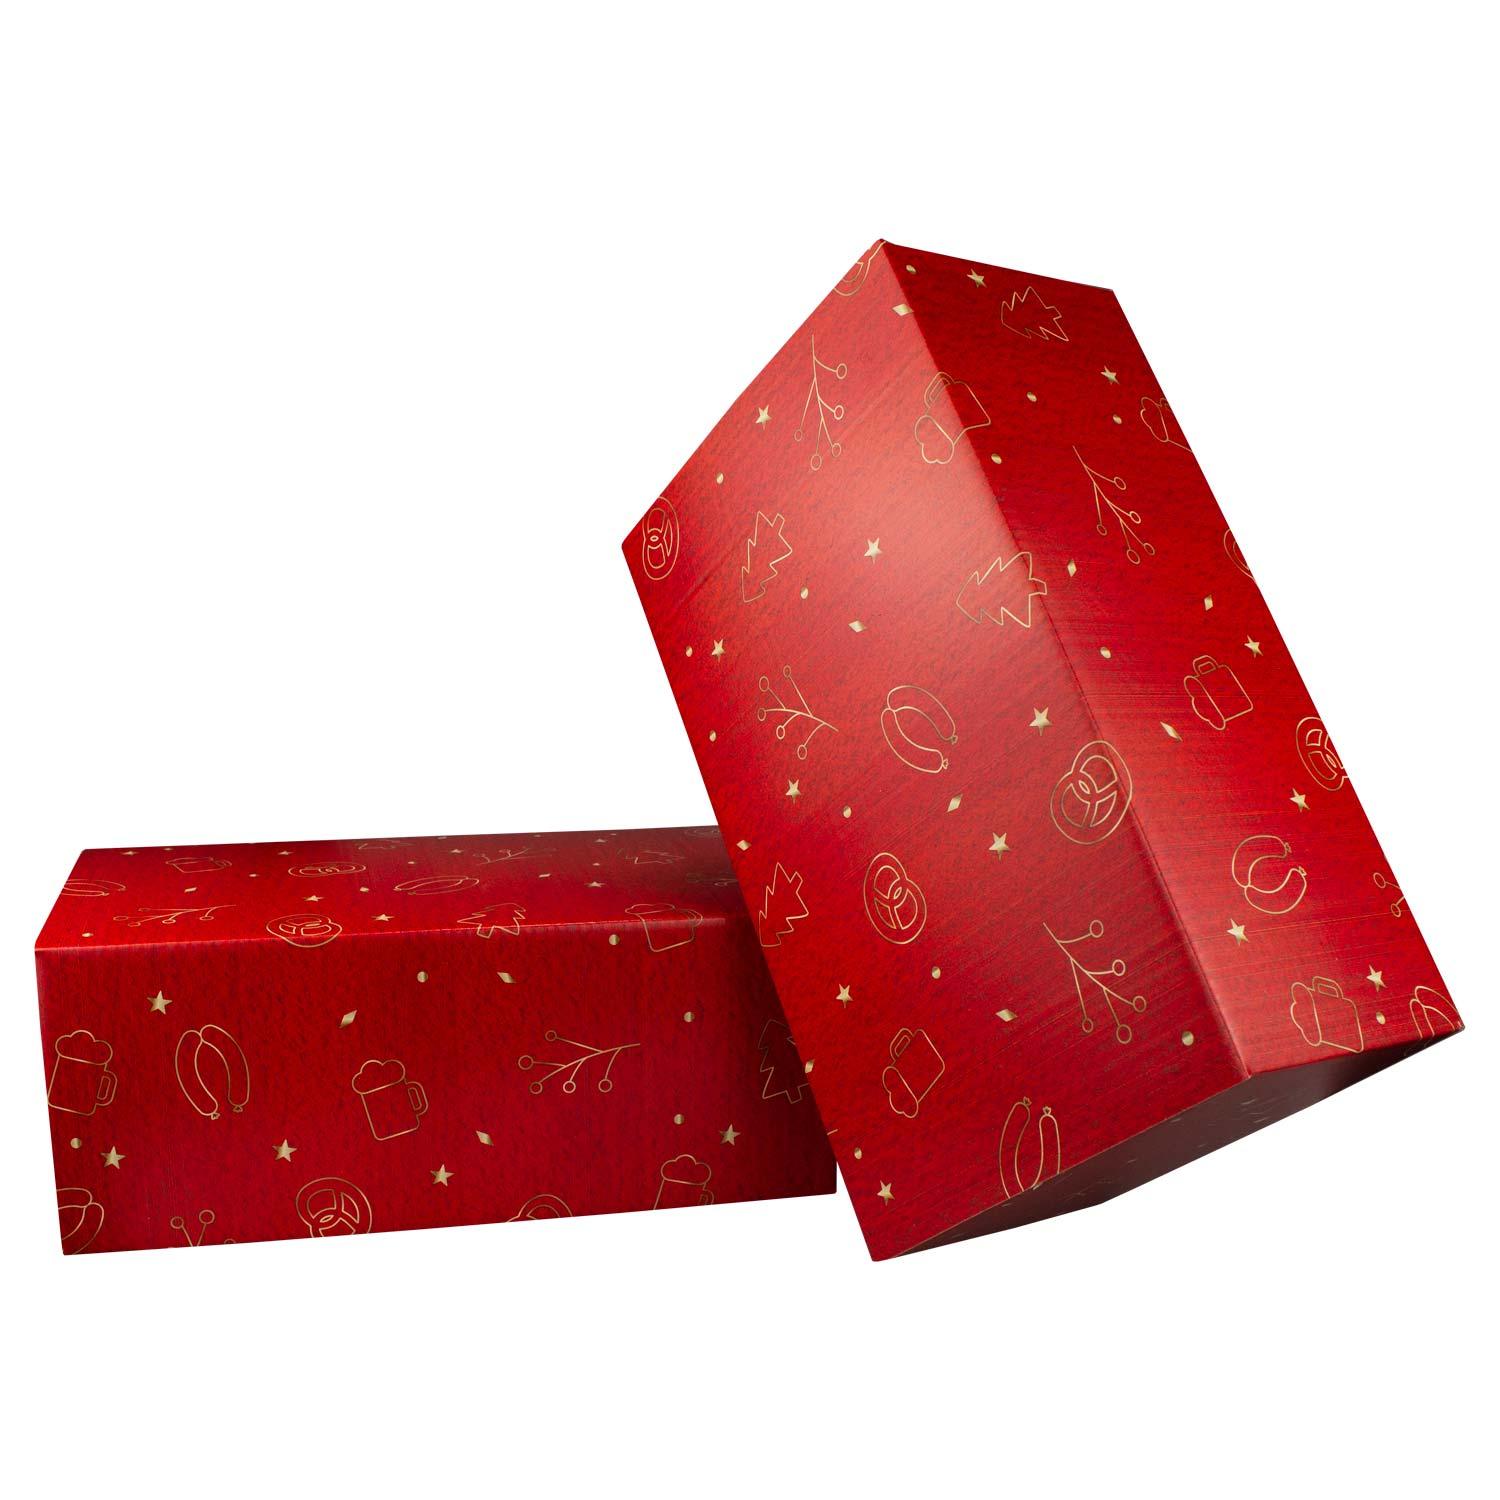 Weihnachtsbox "Glühwein" - bavariashop - mei LebensGfui